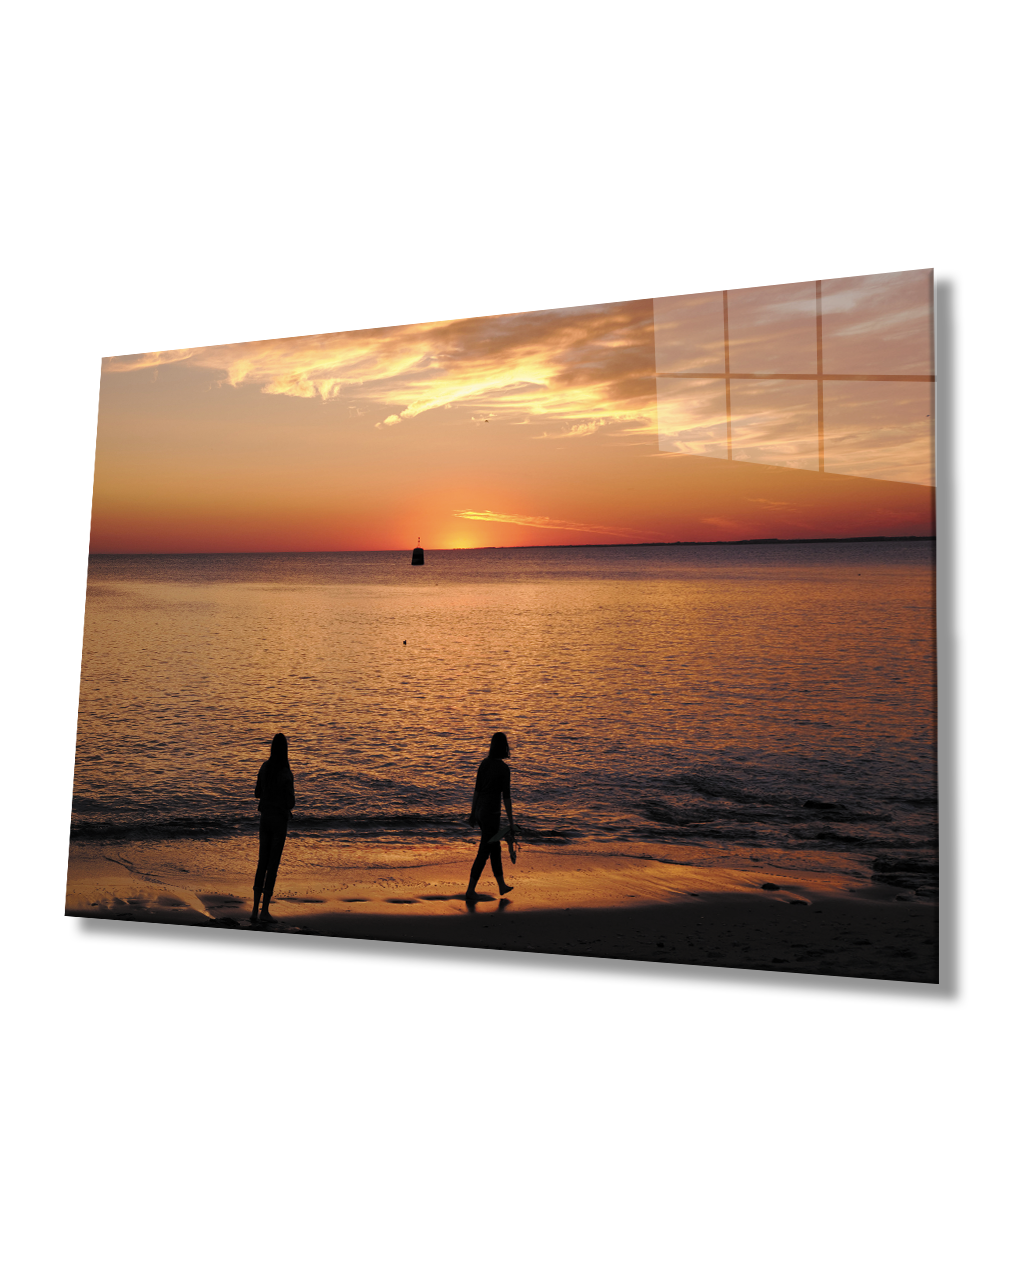 Gün Batımı Sahil Deniz Cam Tablo  4mm Dayanıklı Temperli Cam Sunset Beach Sea Glass Table 4mm Durable Tempered Glass